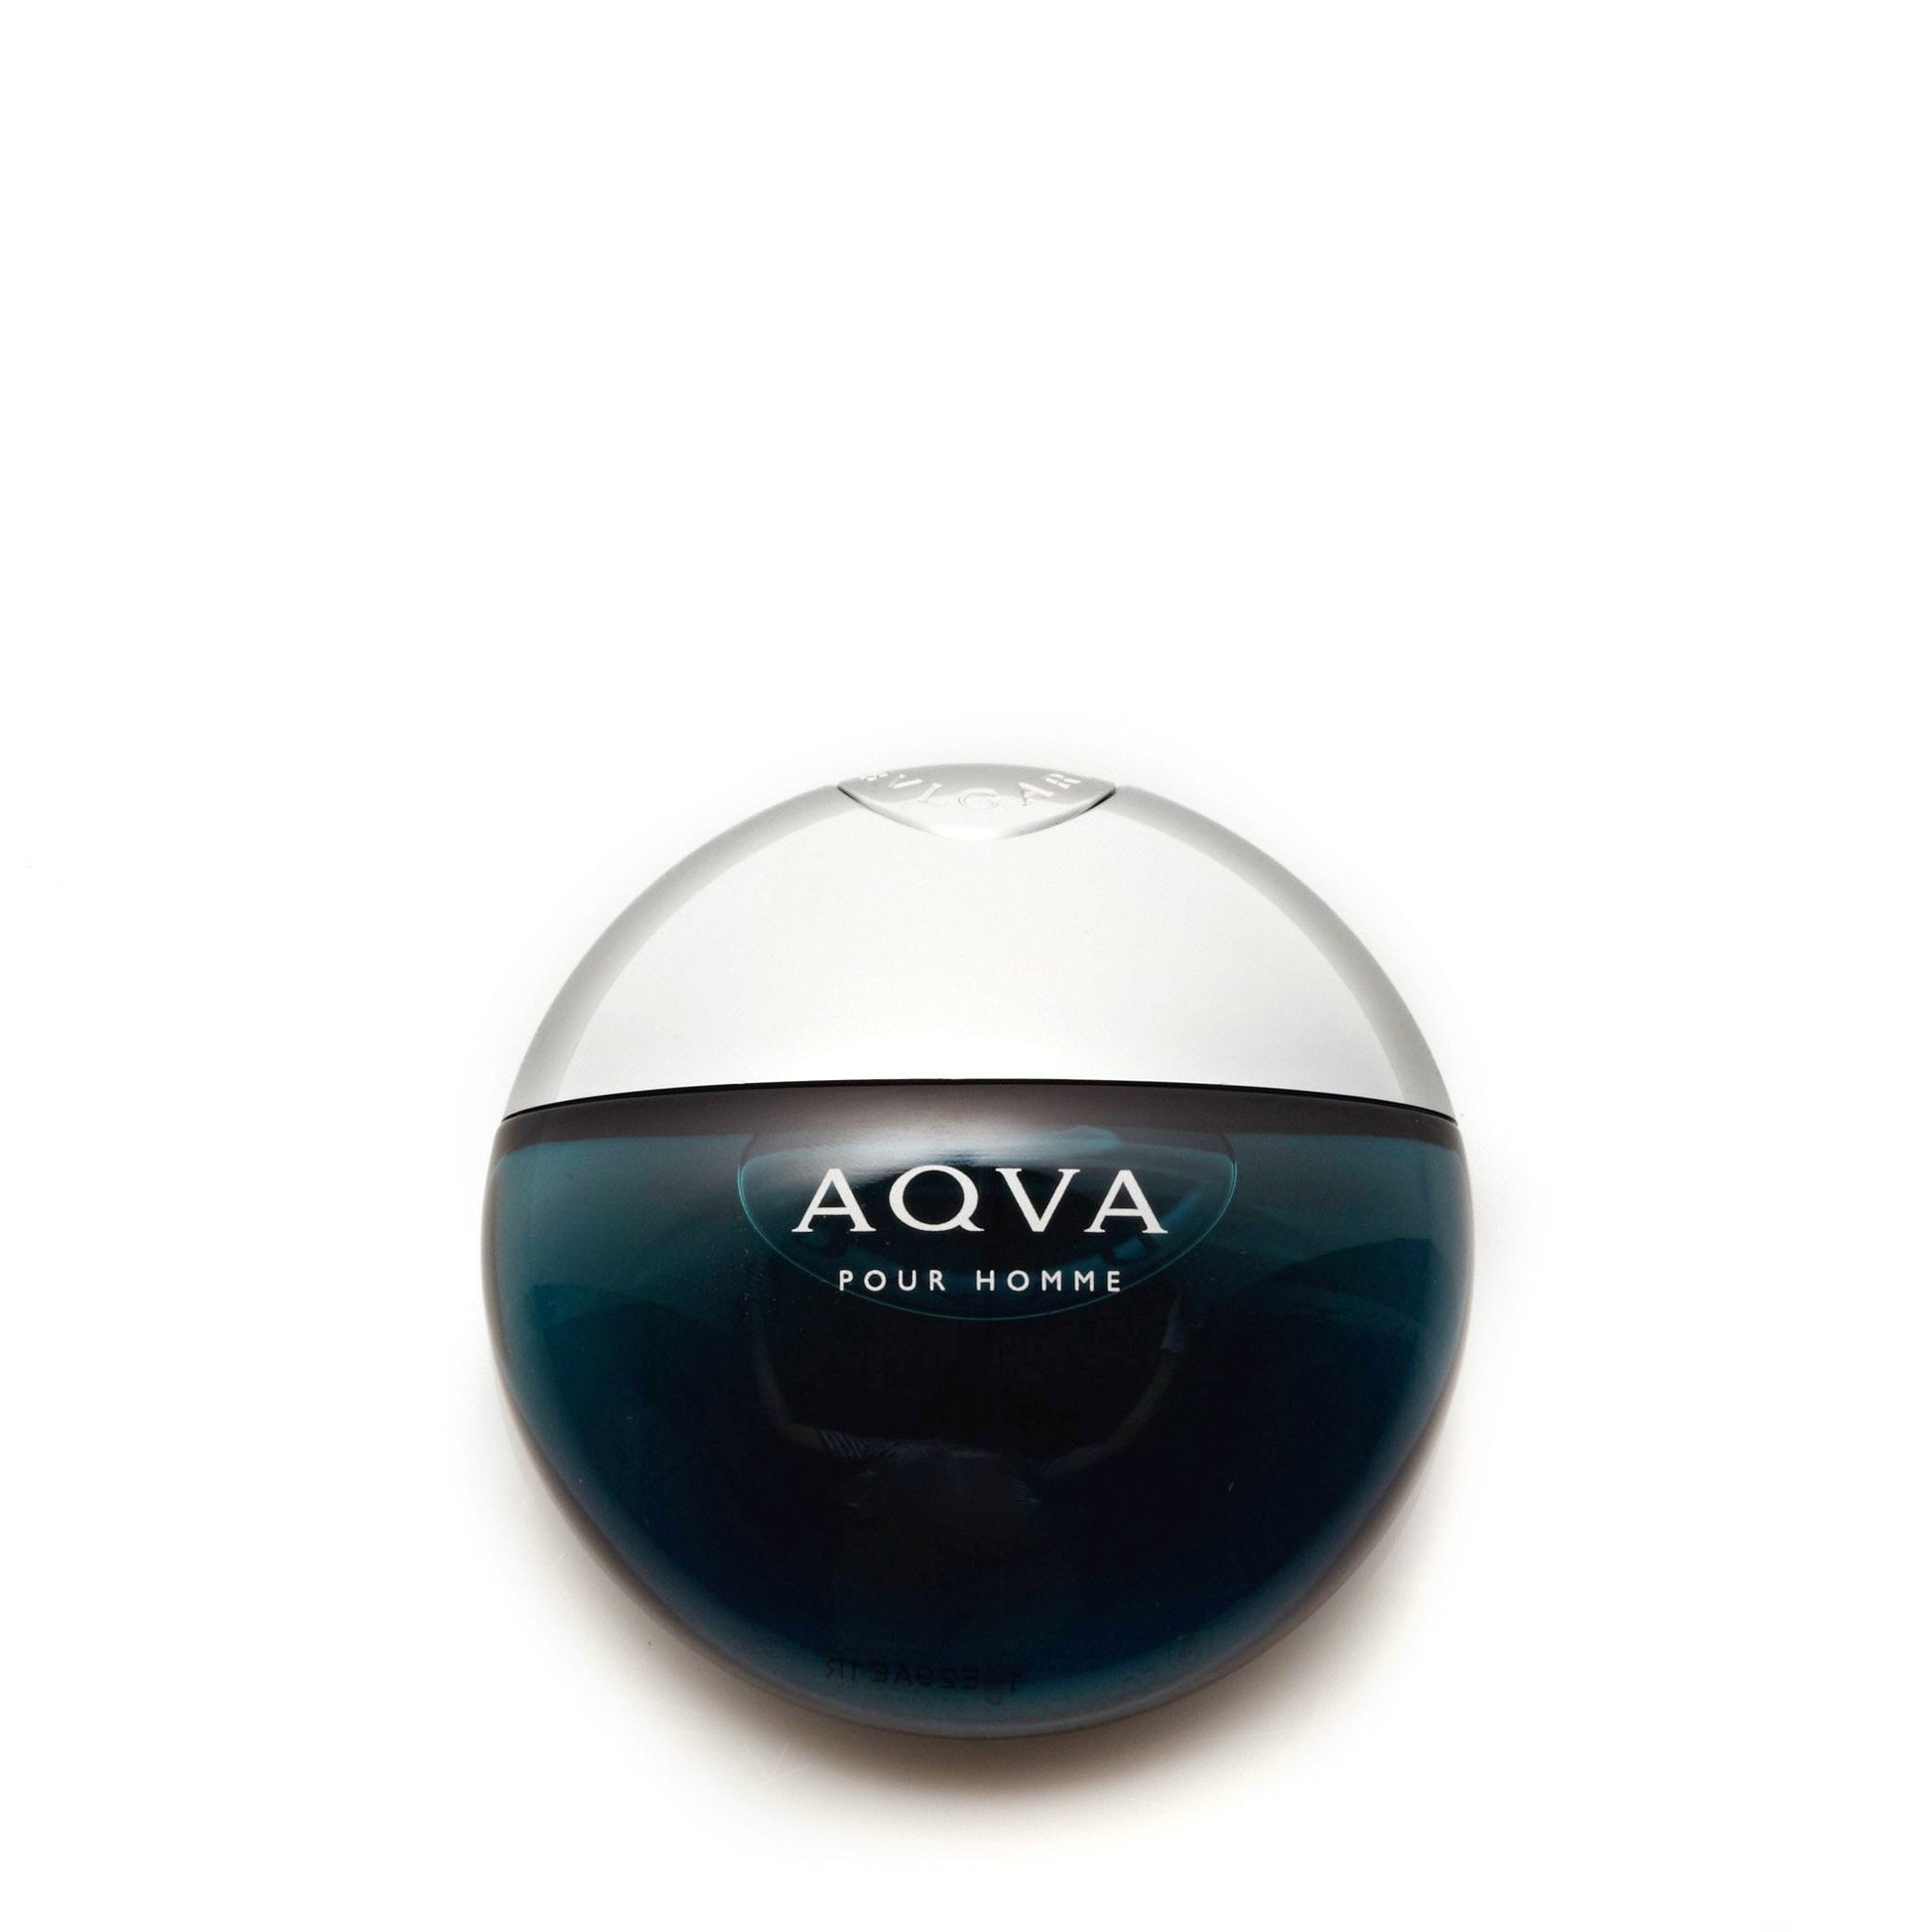 Aqva Eau de Toilette Spray for Men by Bvlgari, Product image 4